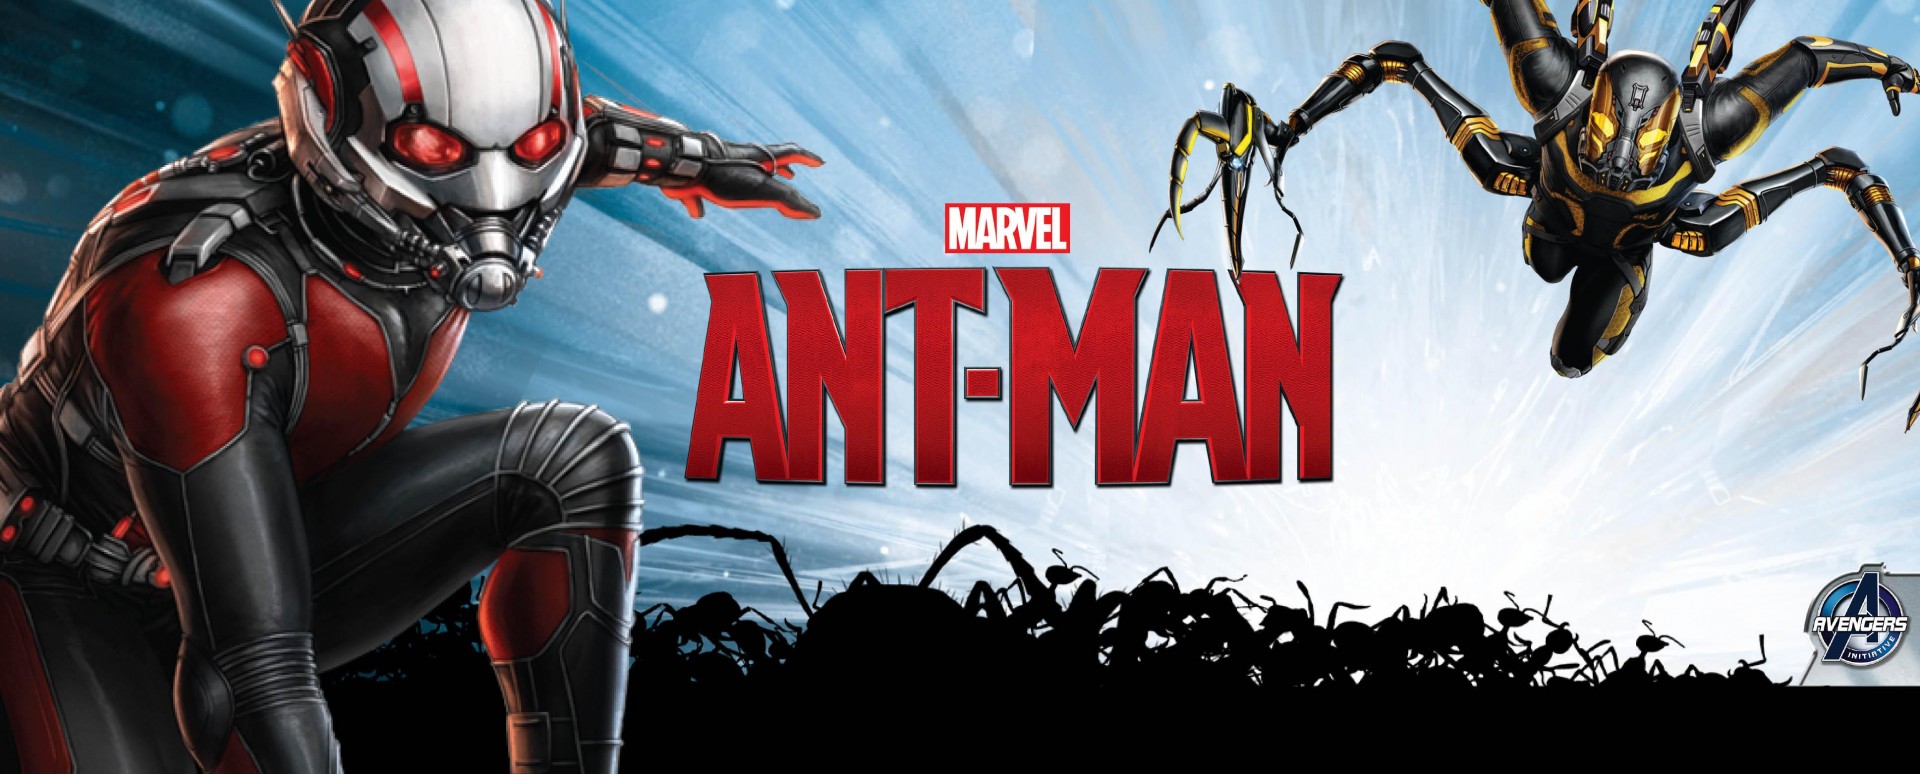 ant-man:ไม่กล้าบี้มดแล้ว